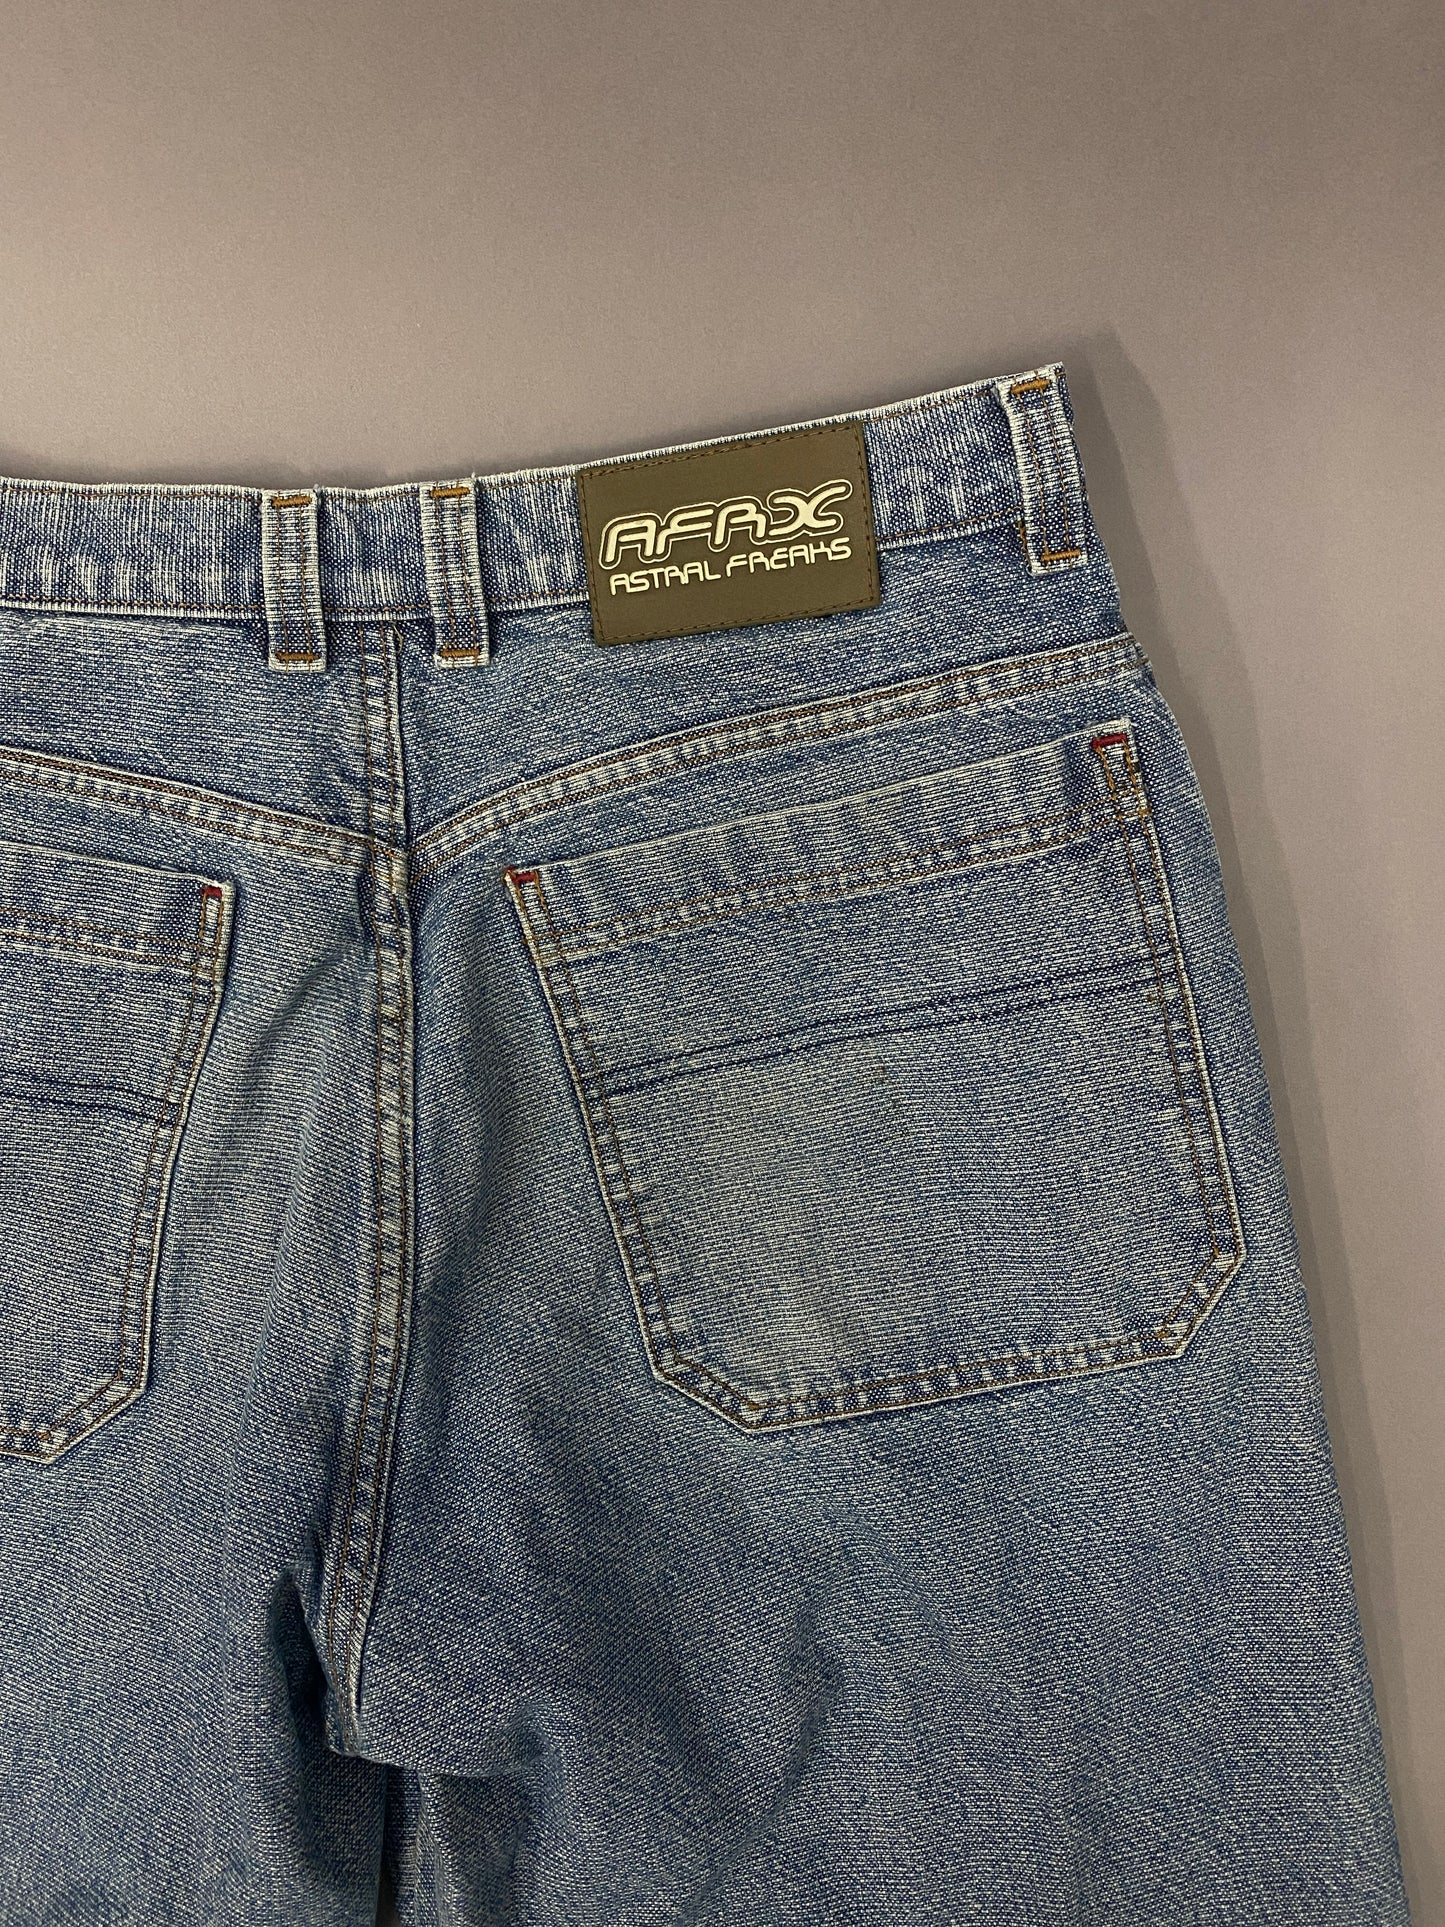 Raver Jeans Vintage - 33